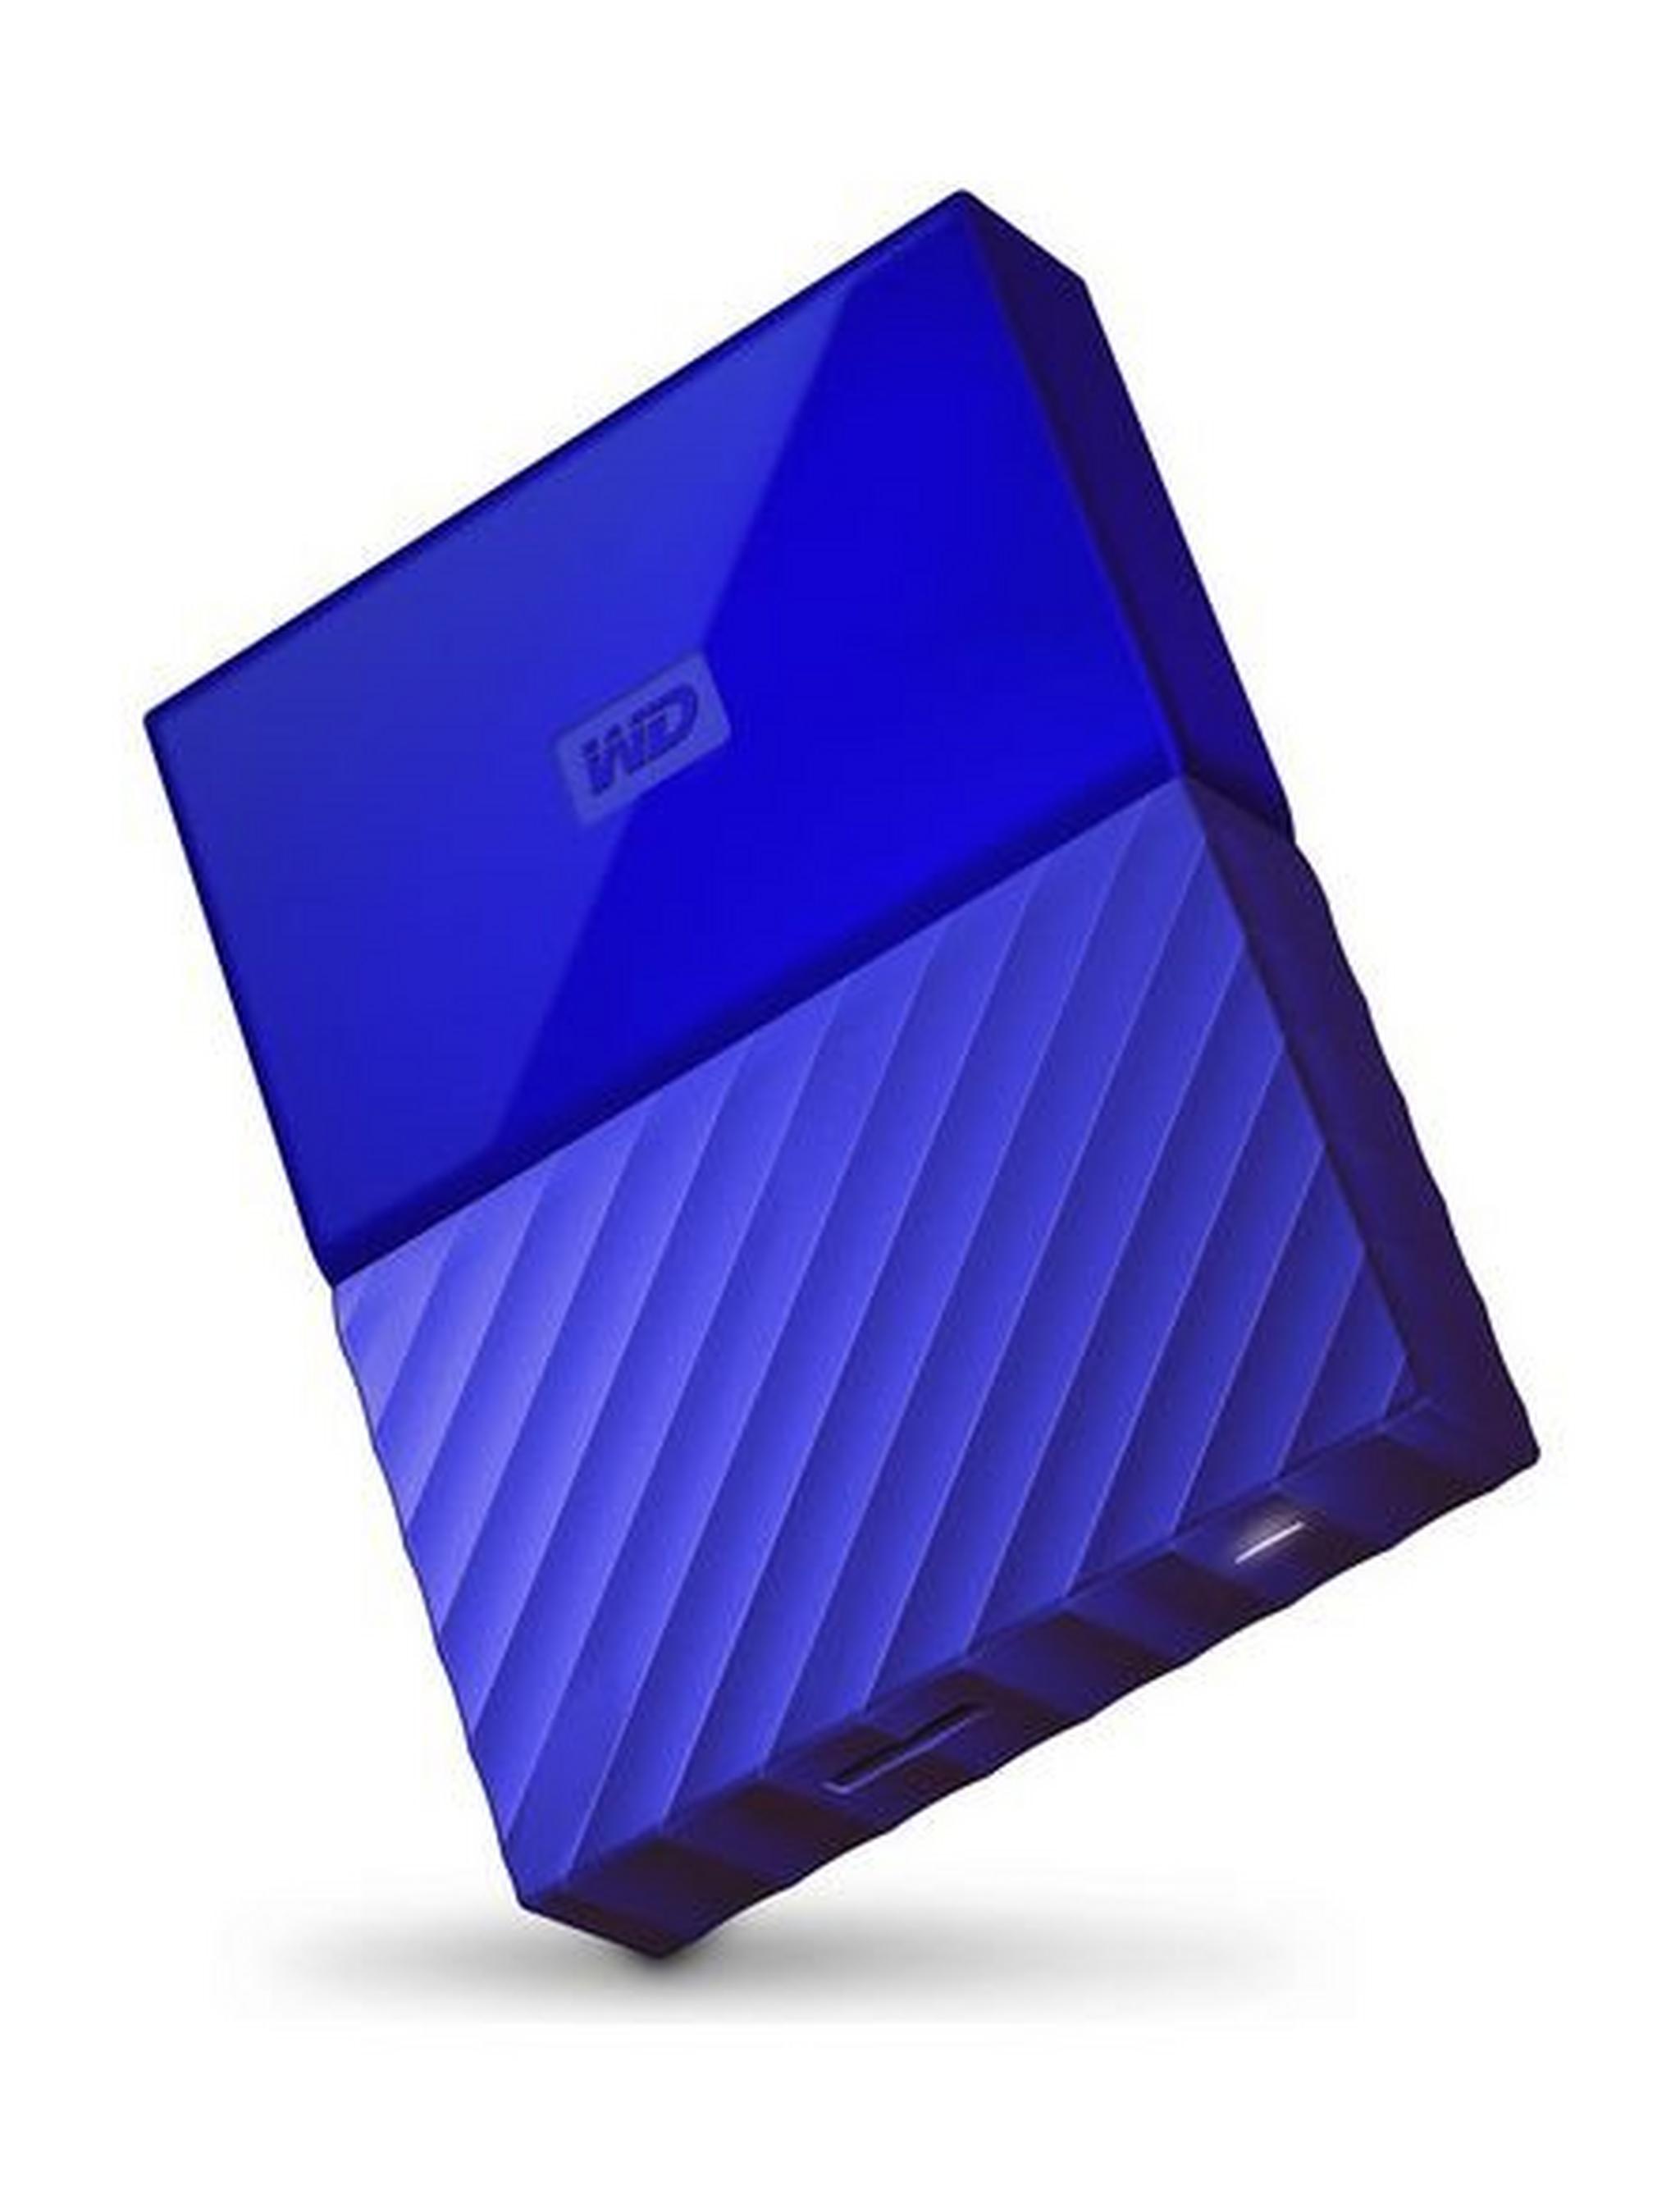 WD 1TB My Passport USB 3.0 External Hard Drive - Blue